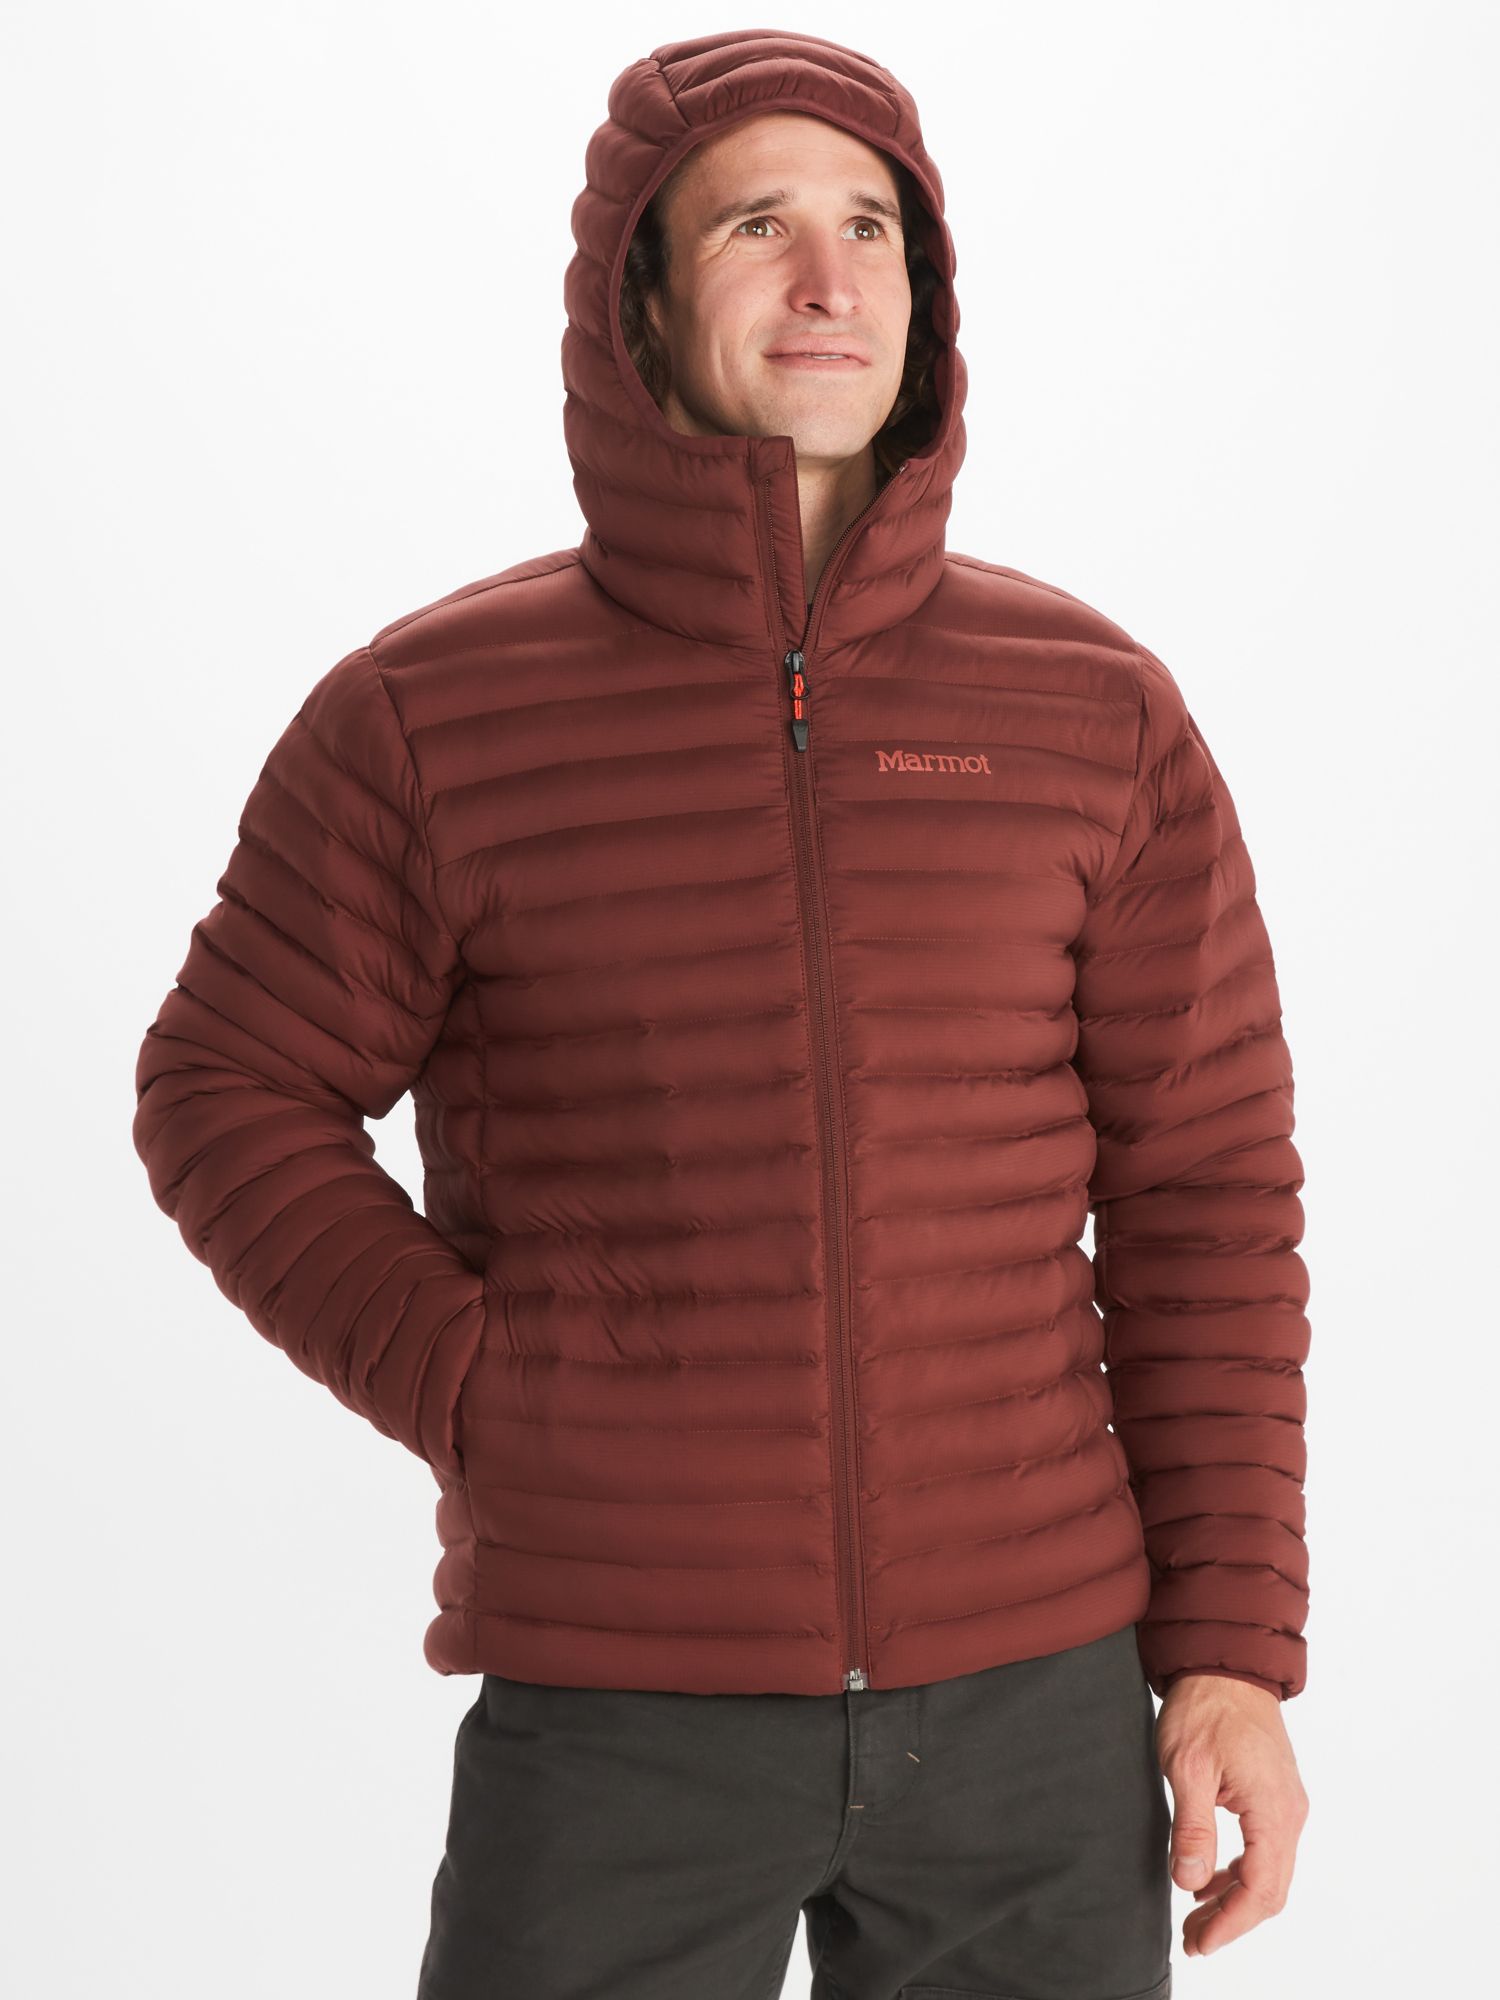 Men's Outdoor Clothing | Marmot